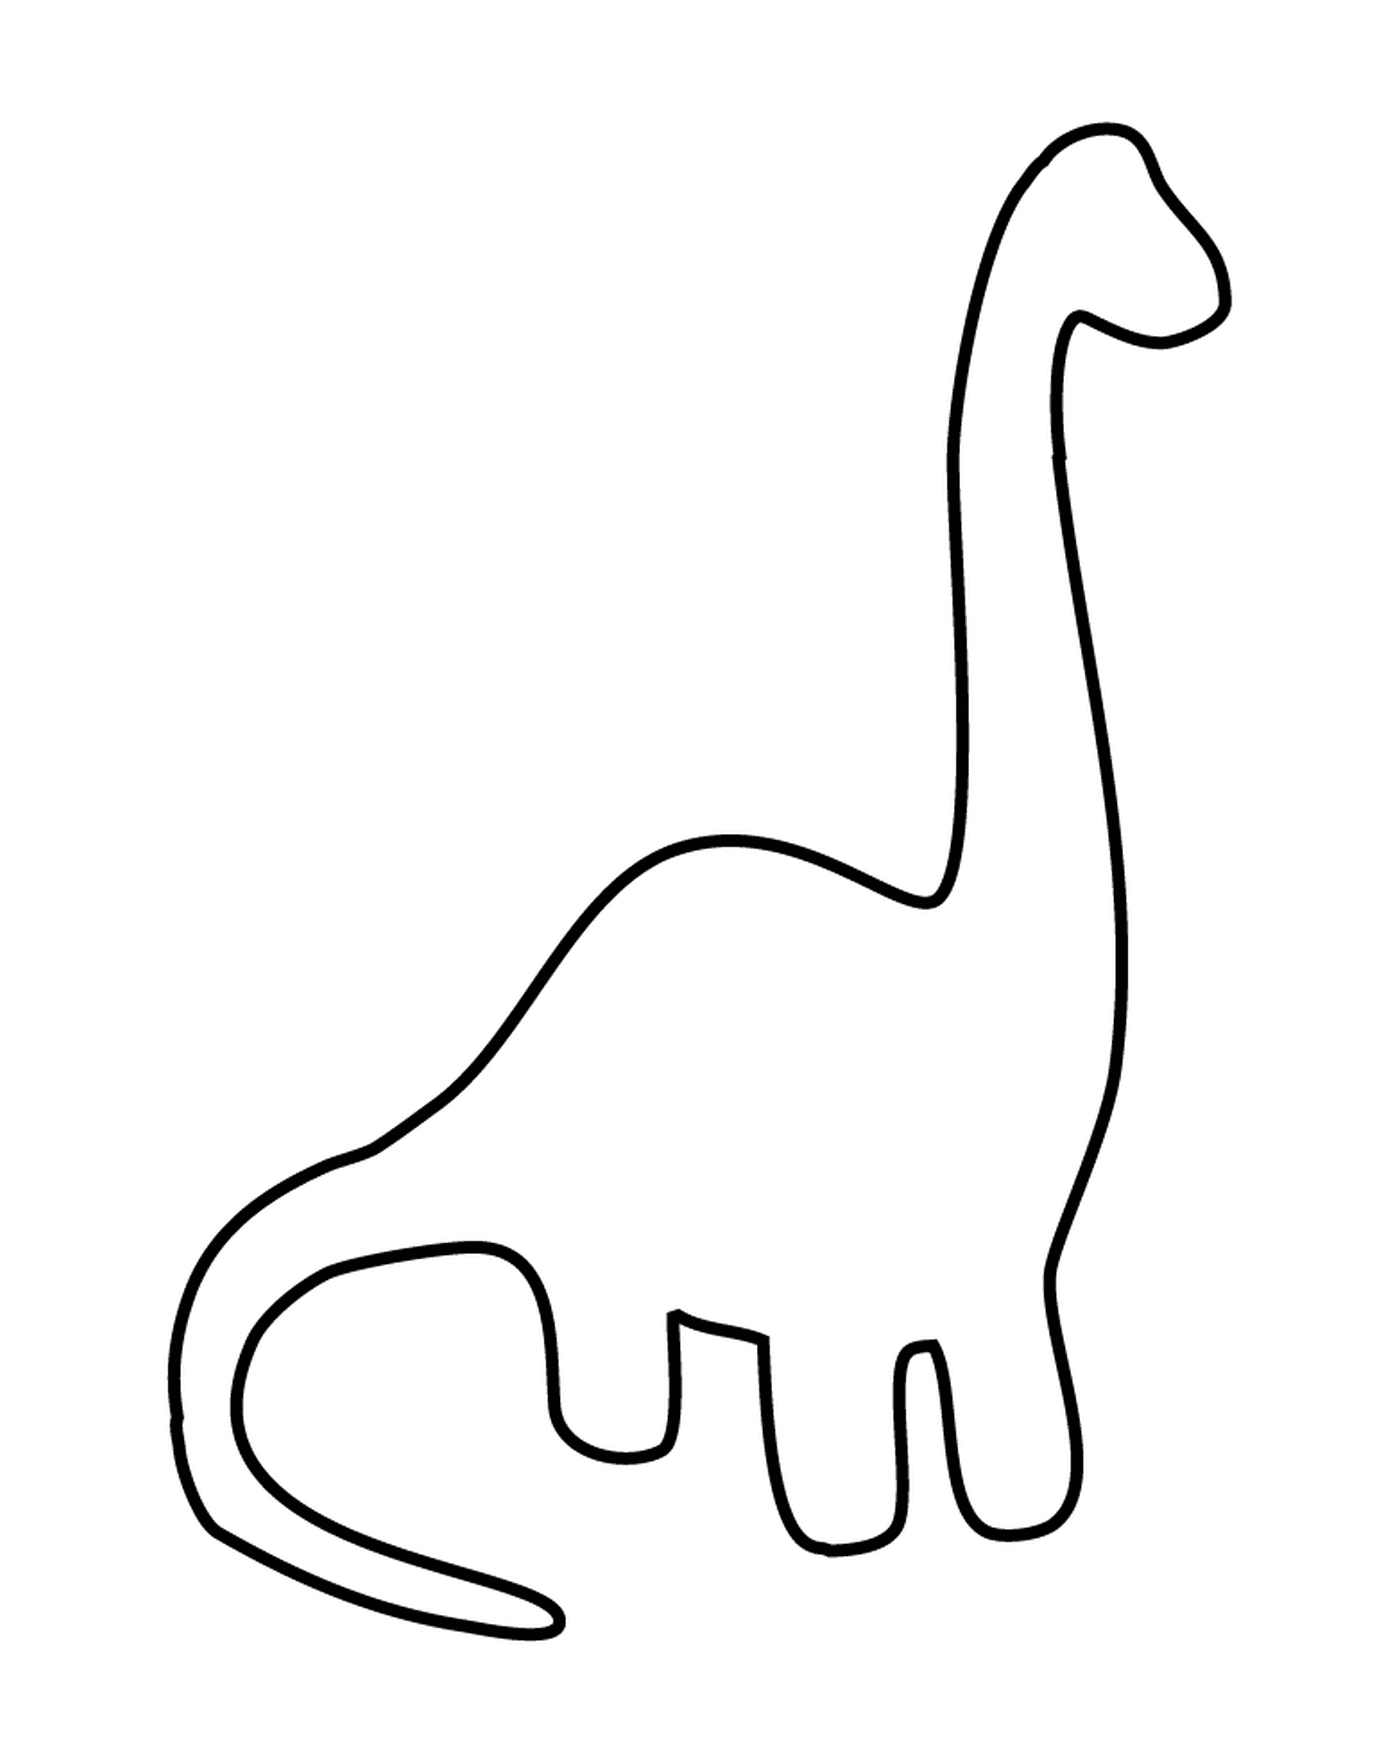   Un contour de dinosaure en noir et blanc 